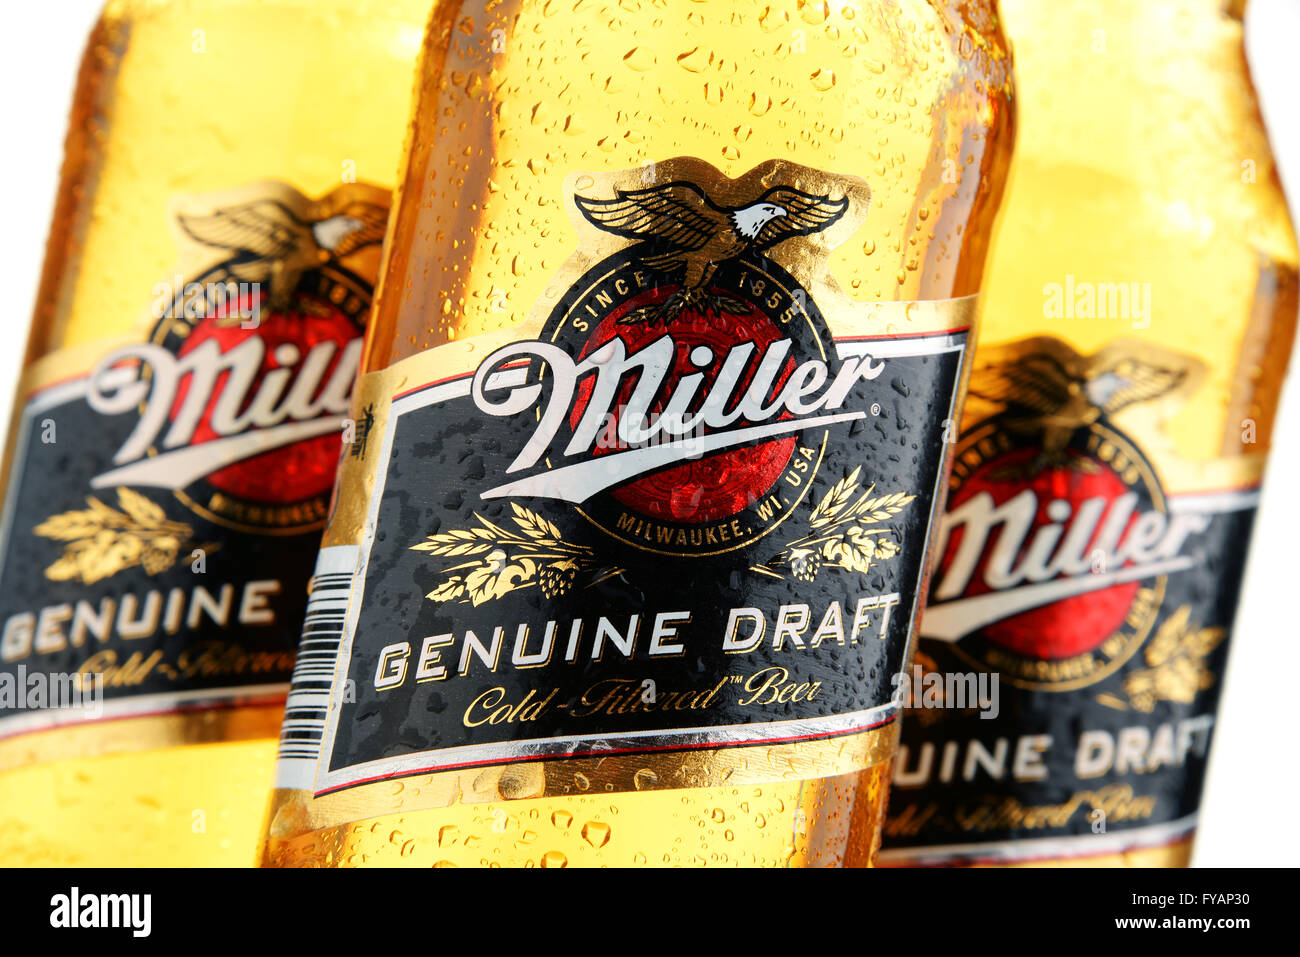 Bottiglie di Miller vero e proprio progetto di birra Foto Stock